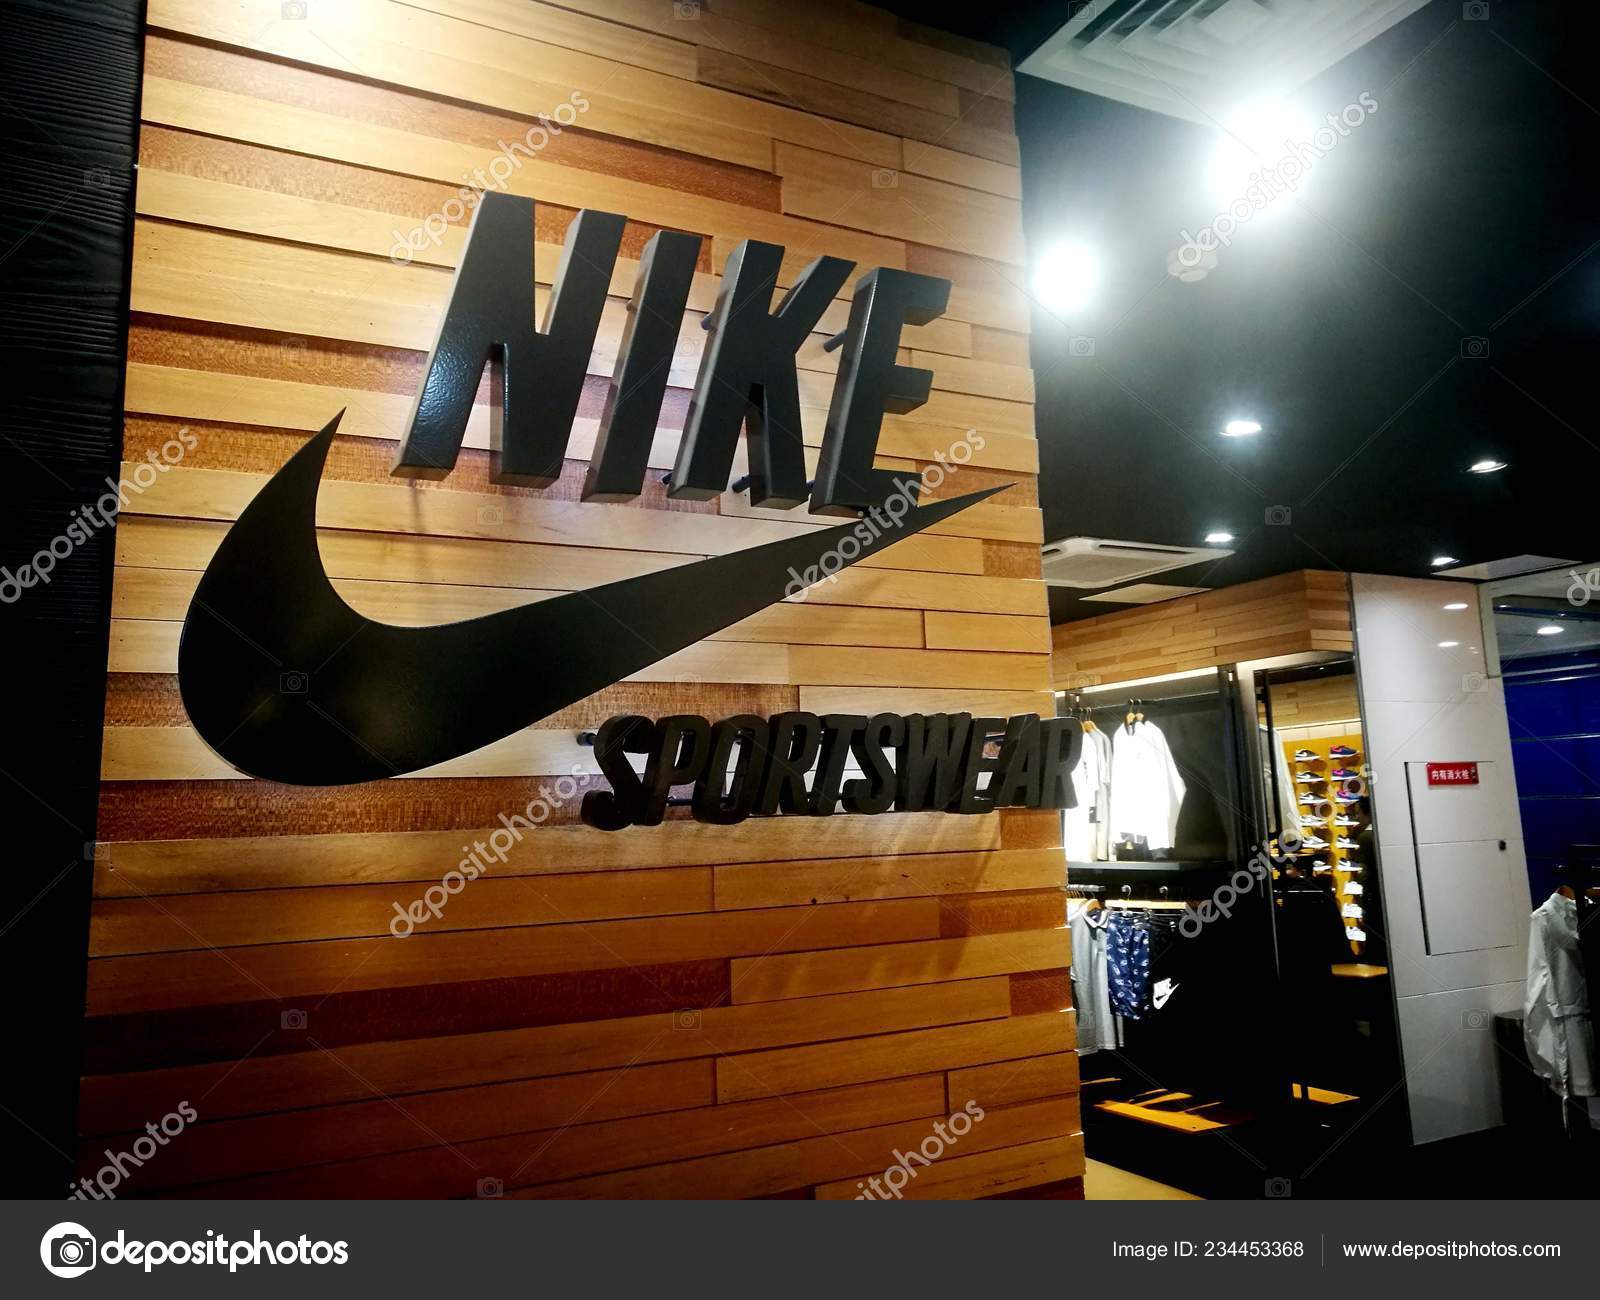 nike sportswear retailers